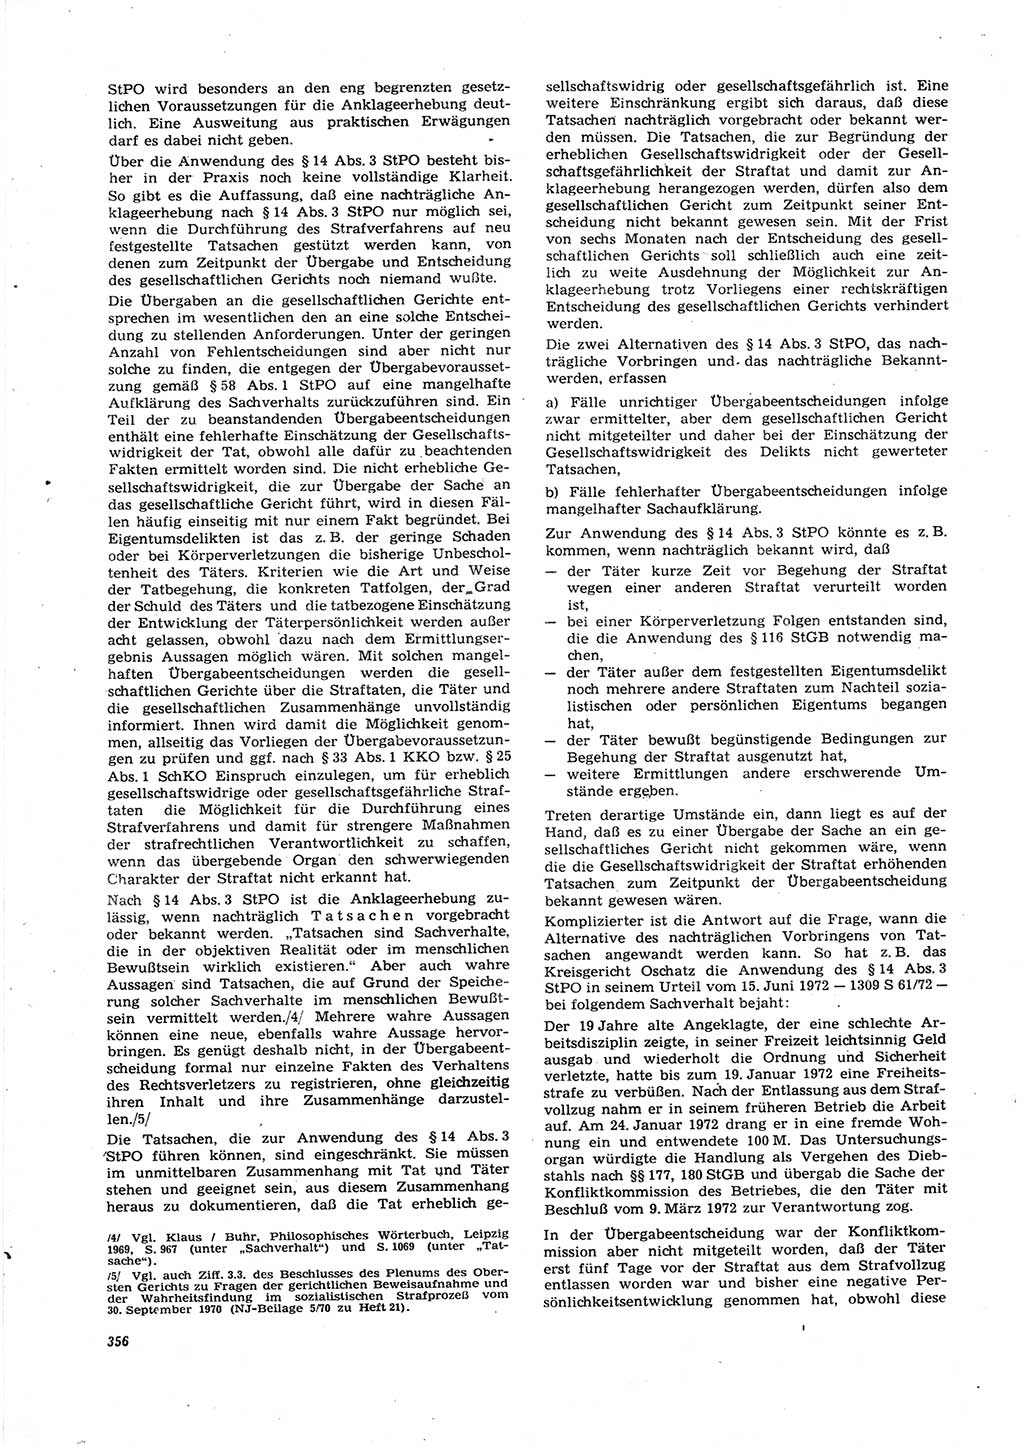 Neue Justiz (NJ), Zeitschrift für Recht und Rechtswissenschaft [Deutsche Demokratische Republik (DDR)], 27. Jahrgang 1973, Seite 356 (NJ DDR 1973, S. 356)